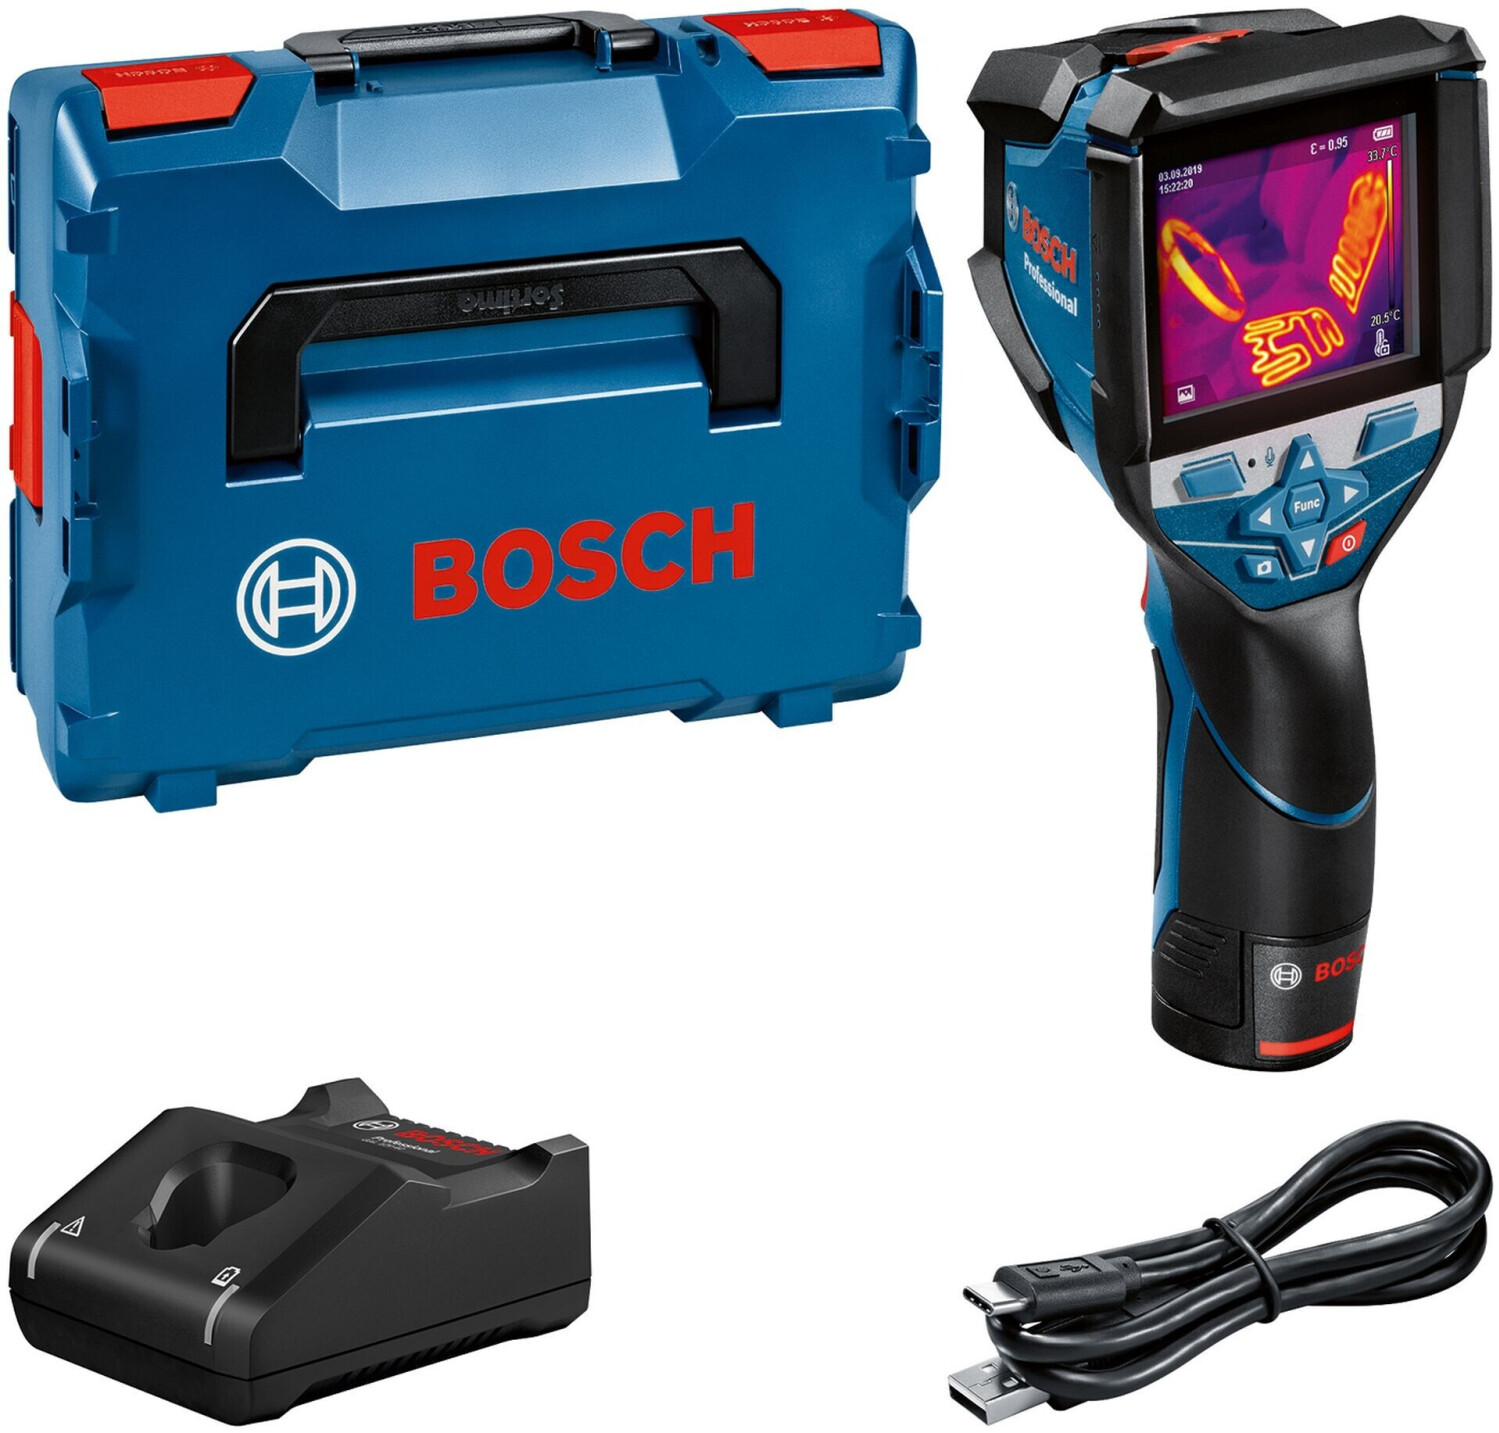 【正規品定番】BOSCH サーモグラフィカメラGTC 600 C 電動工具 未使用 M6478692 環境測定器